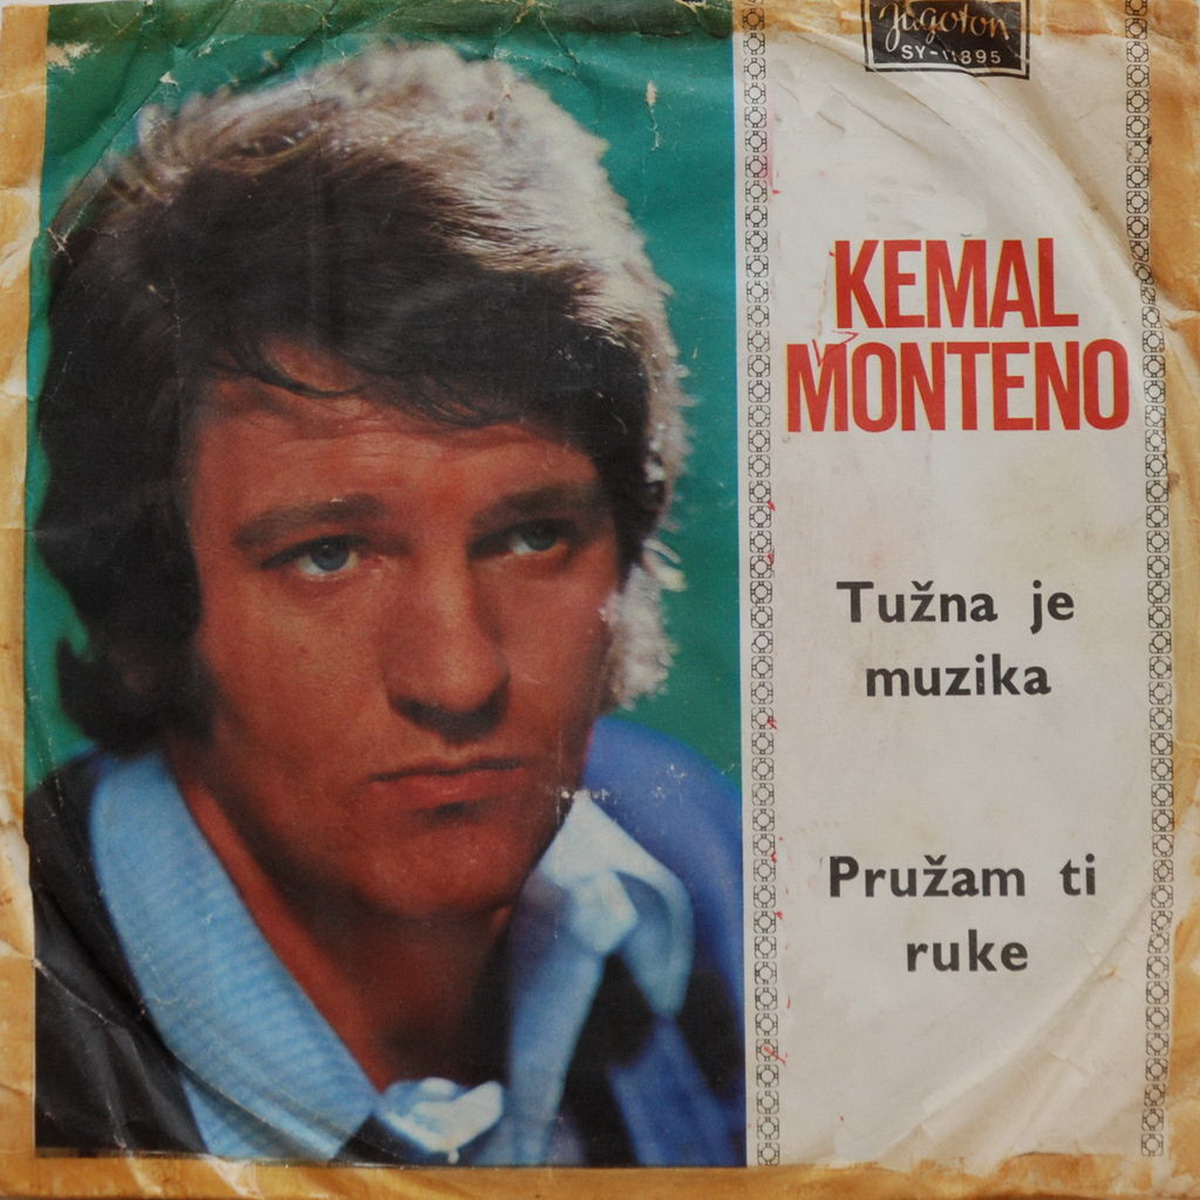 Kemal Monteno 1971 Tuzna je muzika a